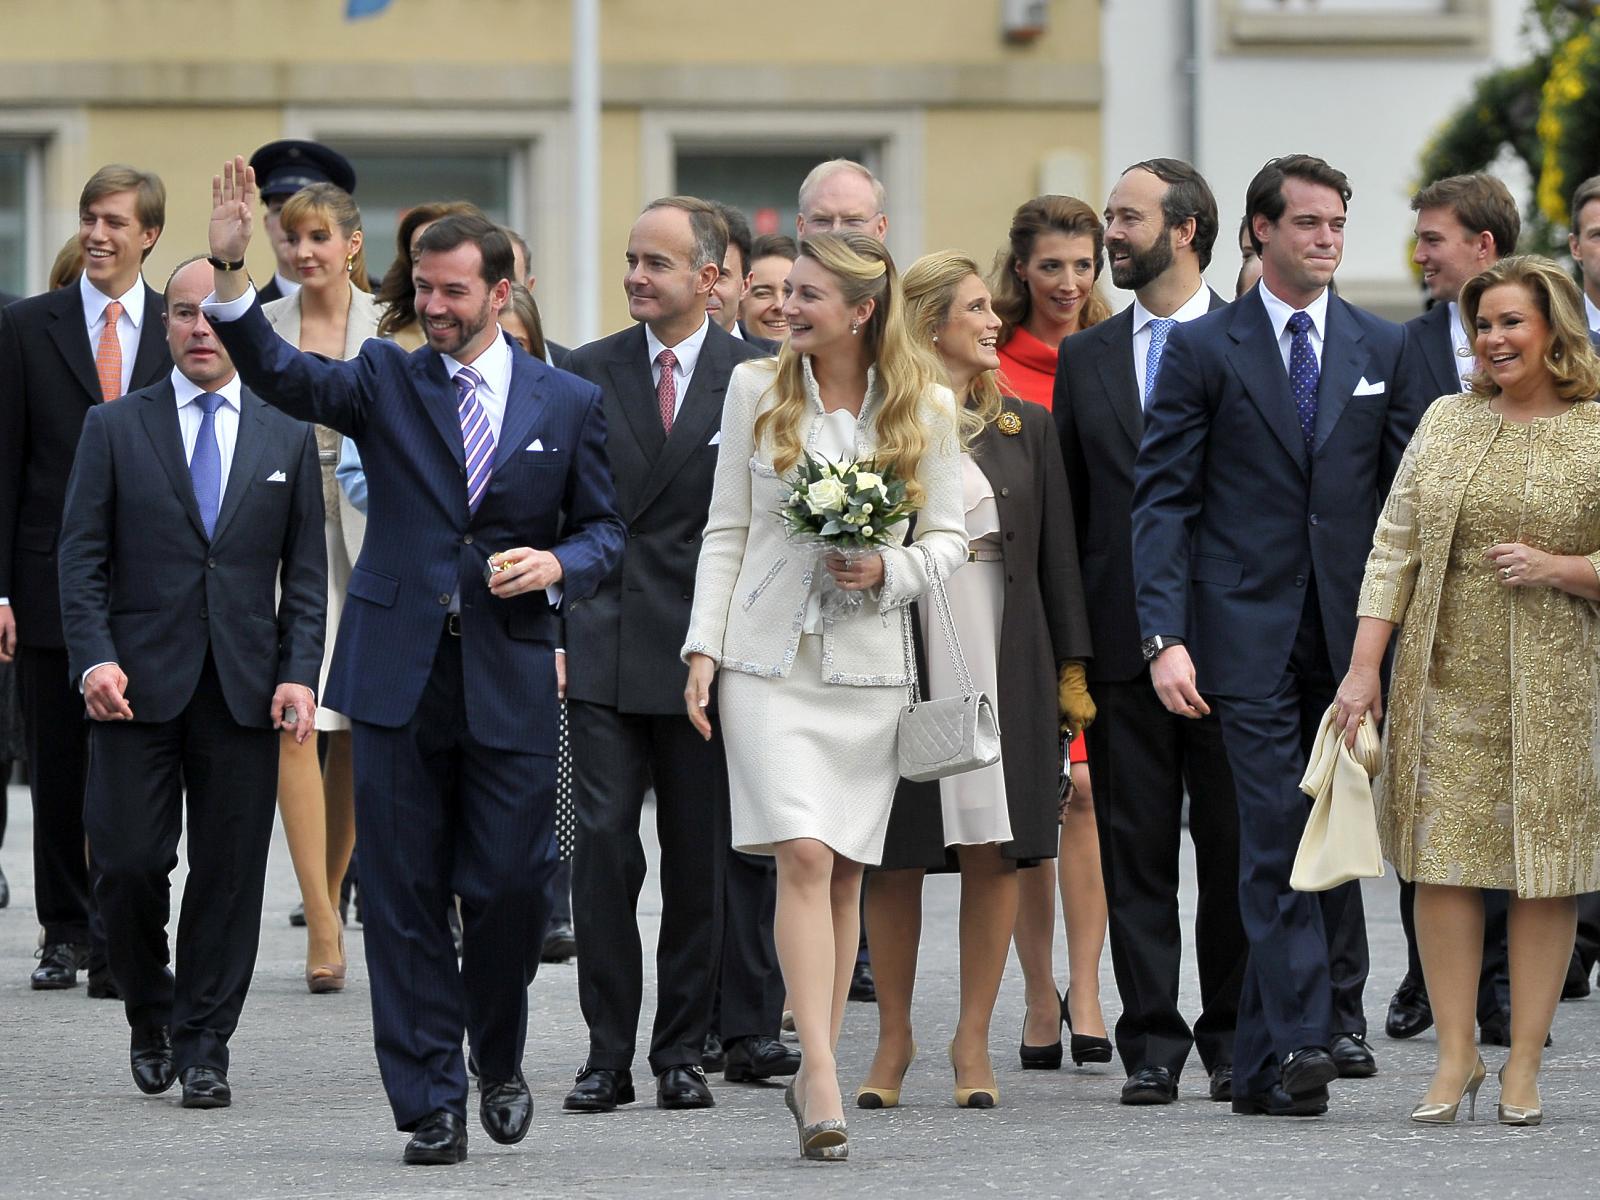 Le Couple héritier lors de son Mariage Civil en 2012